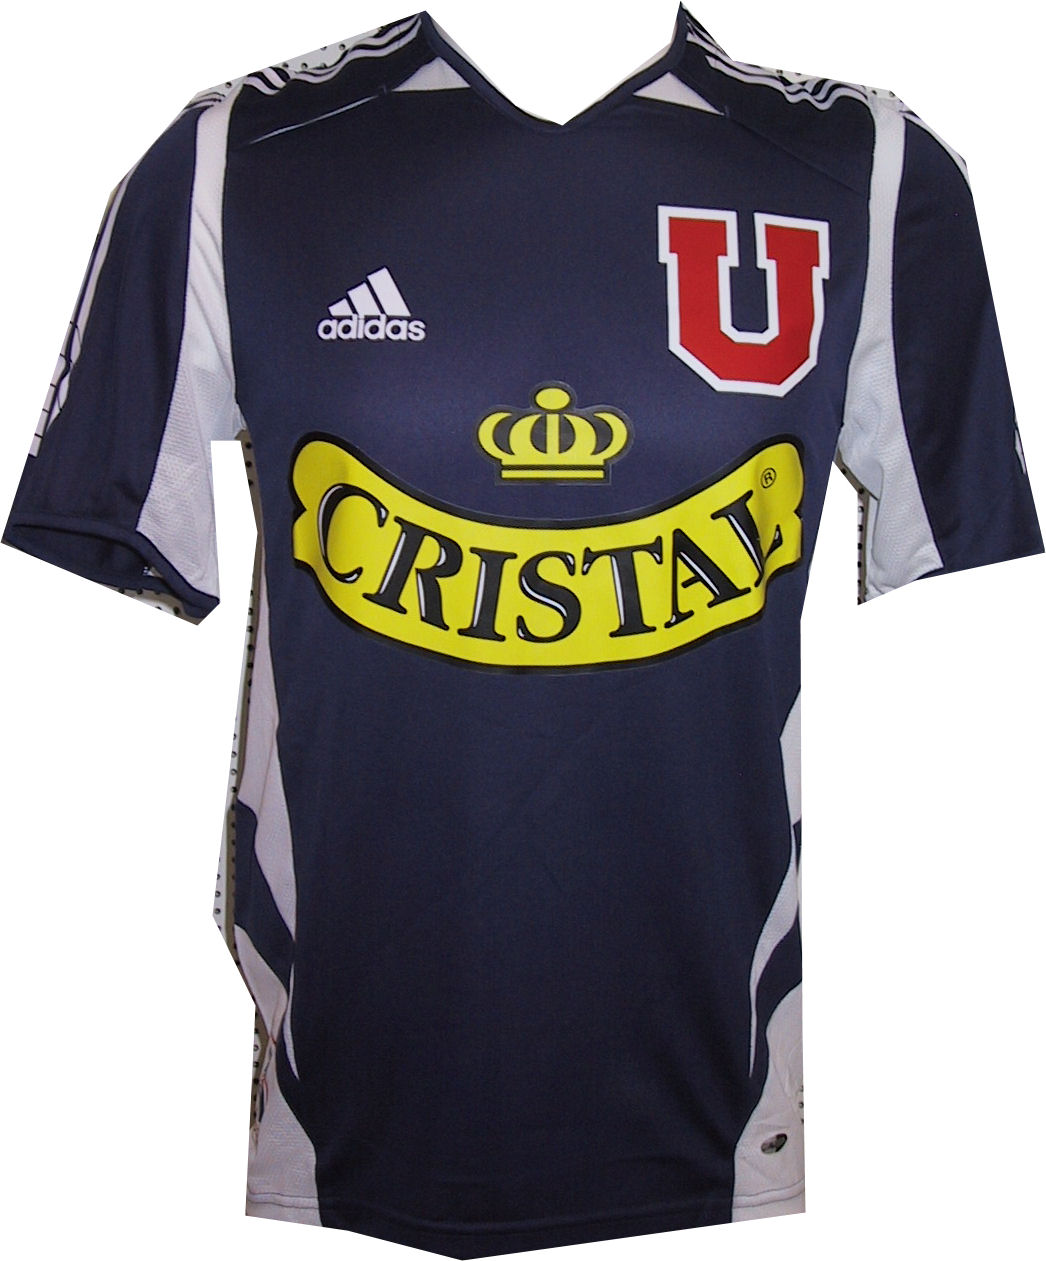 Chilean teams Adidas Universidad de Chile home 2005